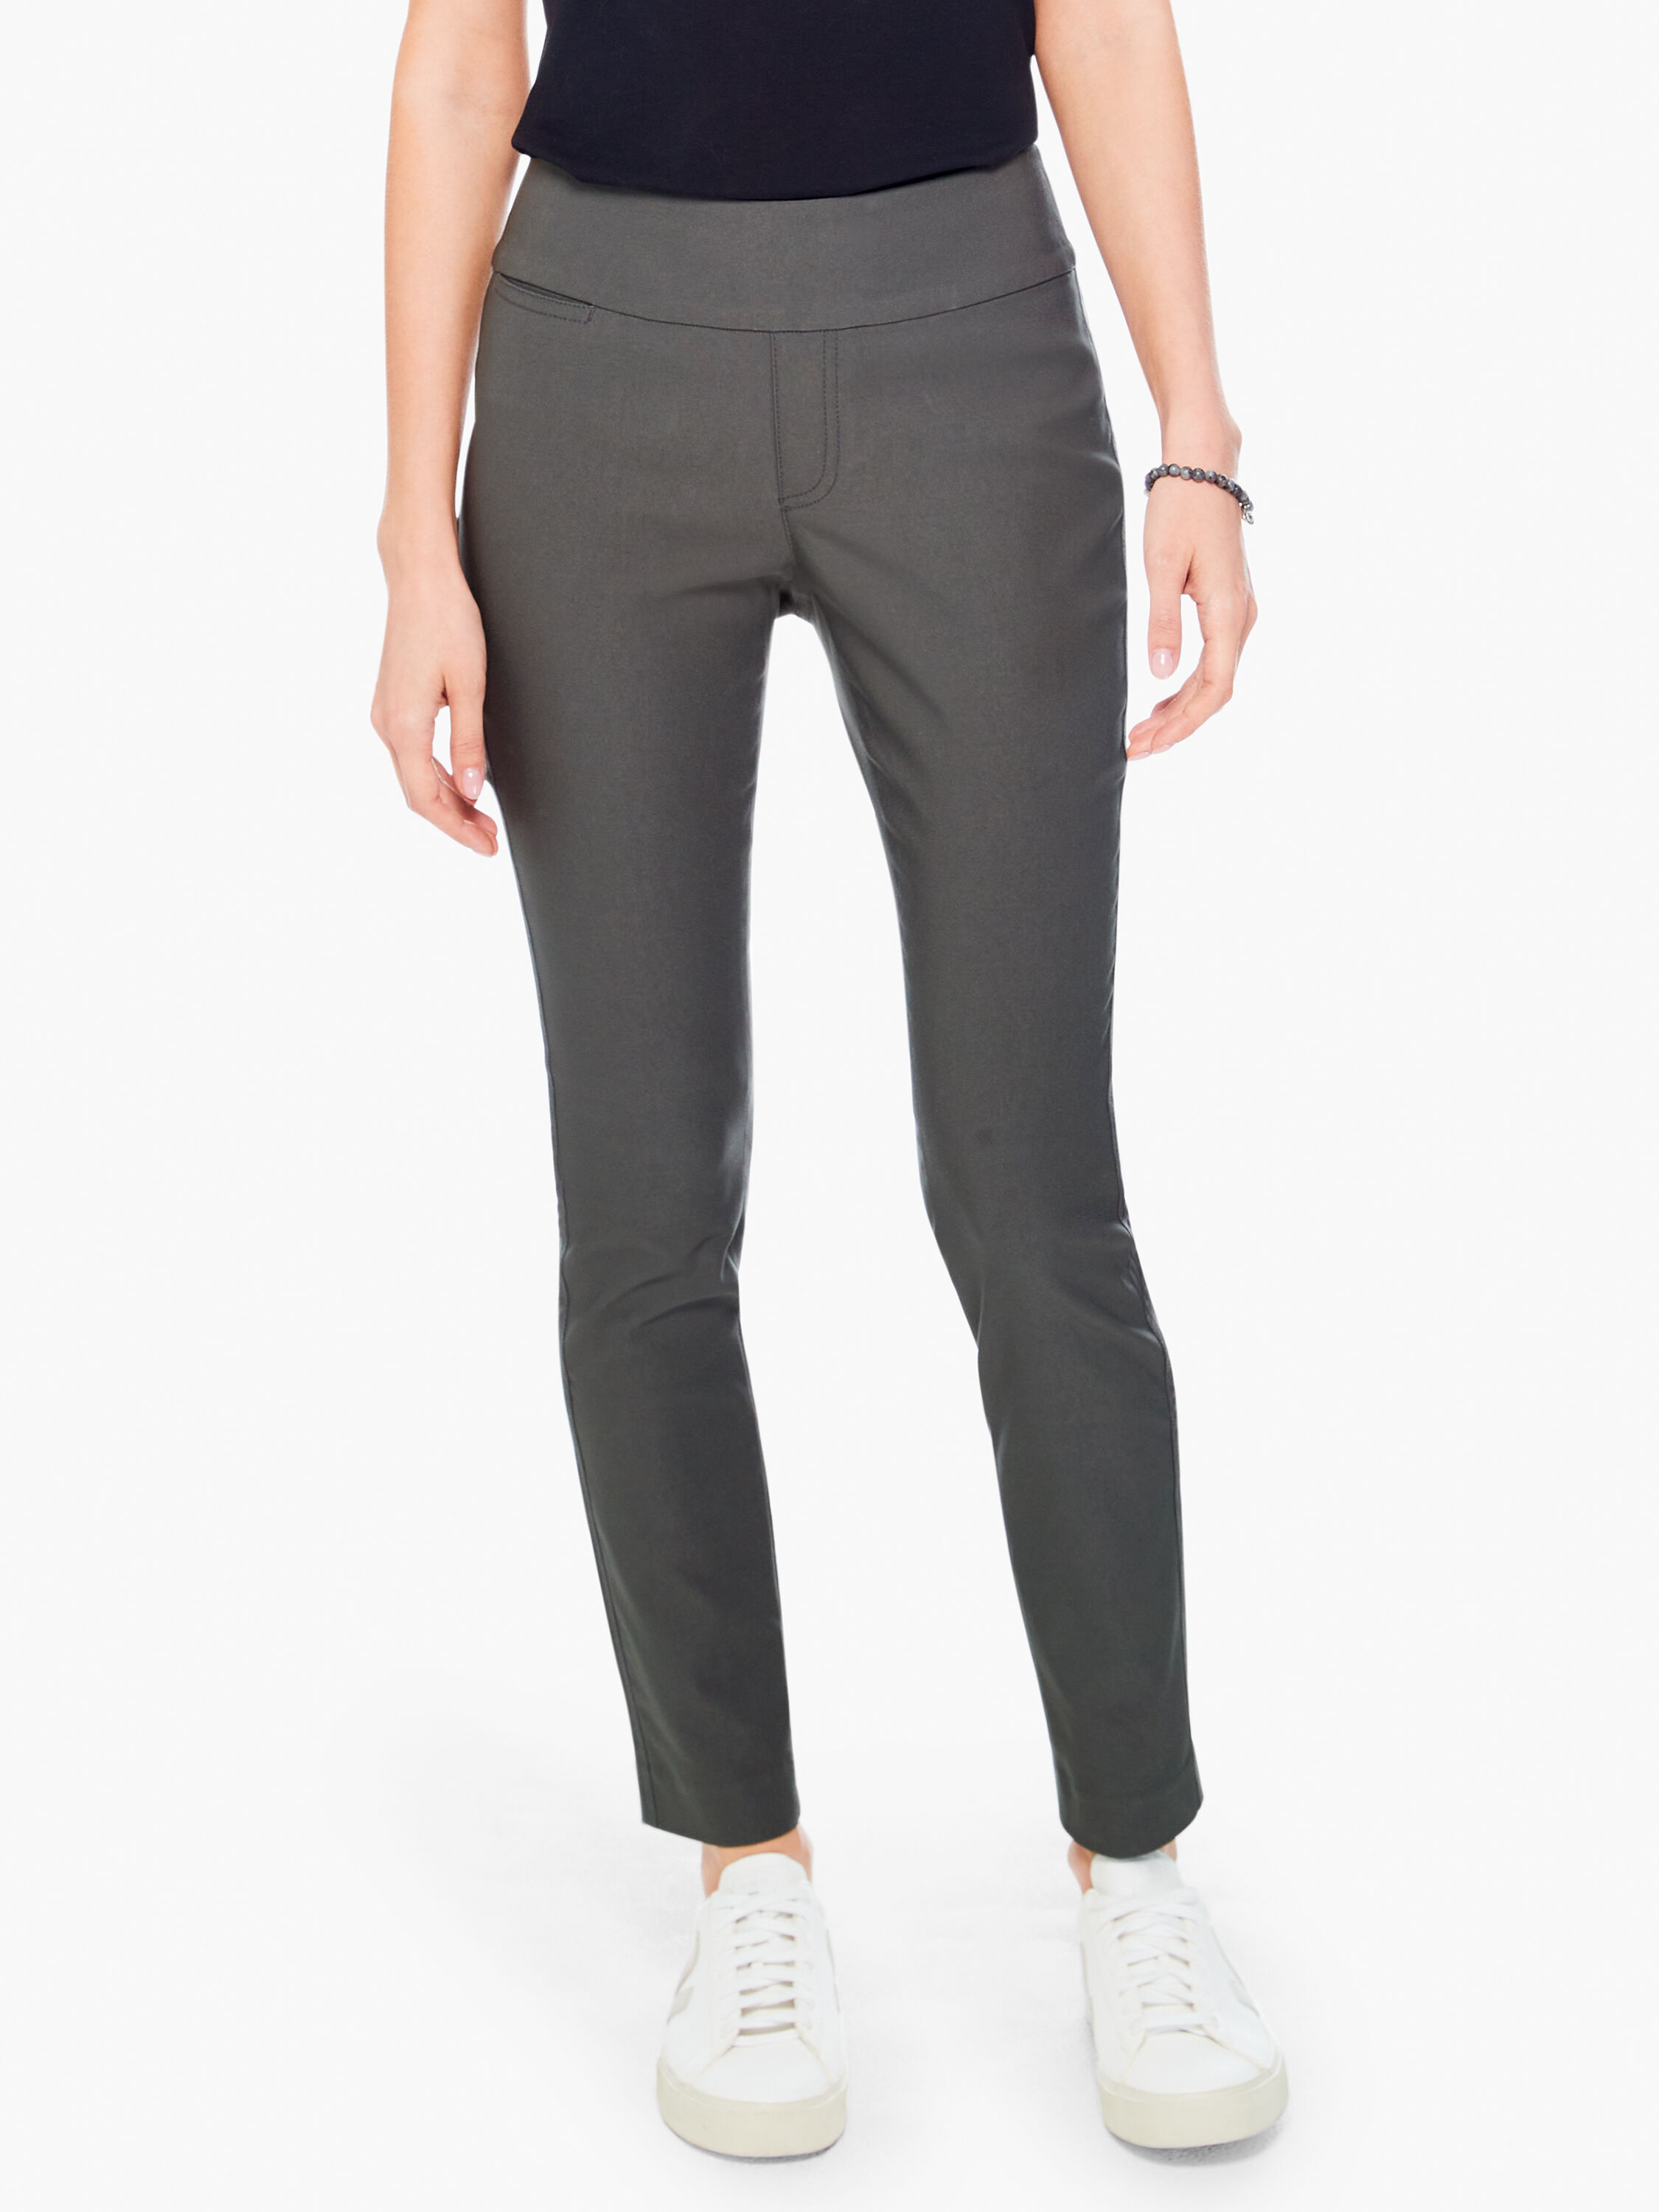 Women's Pants, Jeans + Leggings on Sale | NIC+ZOE